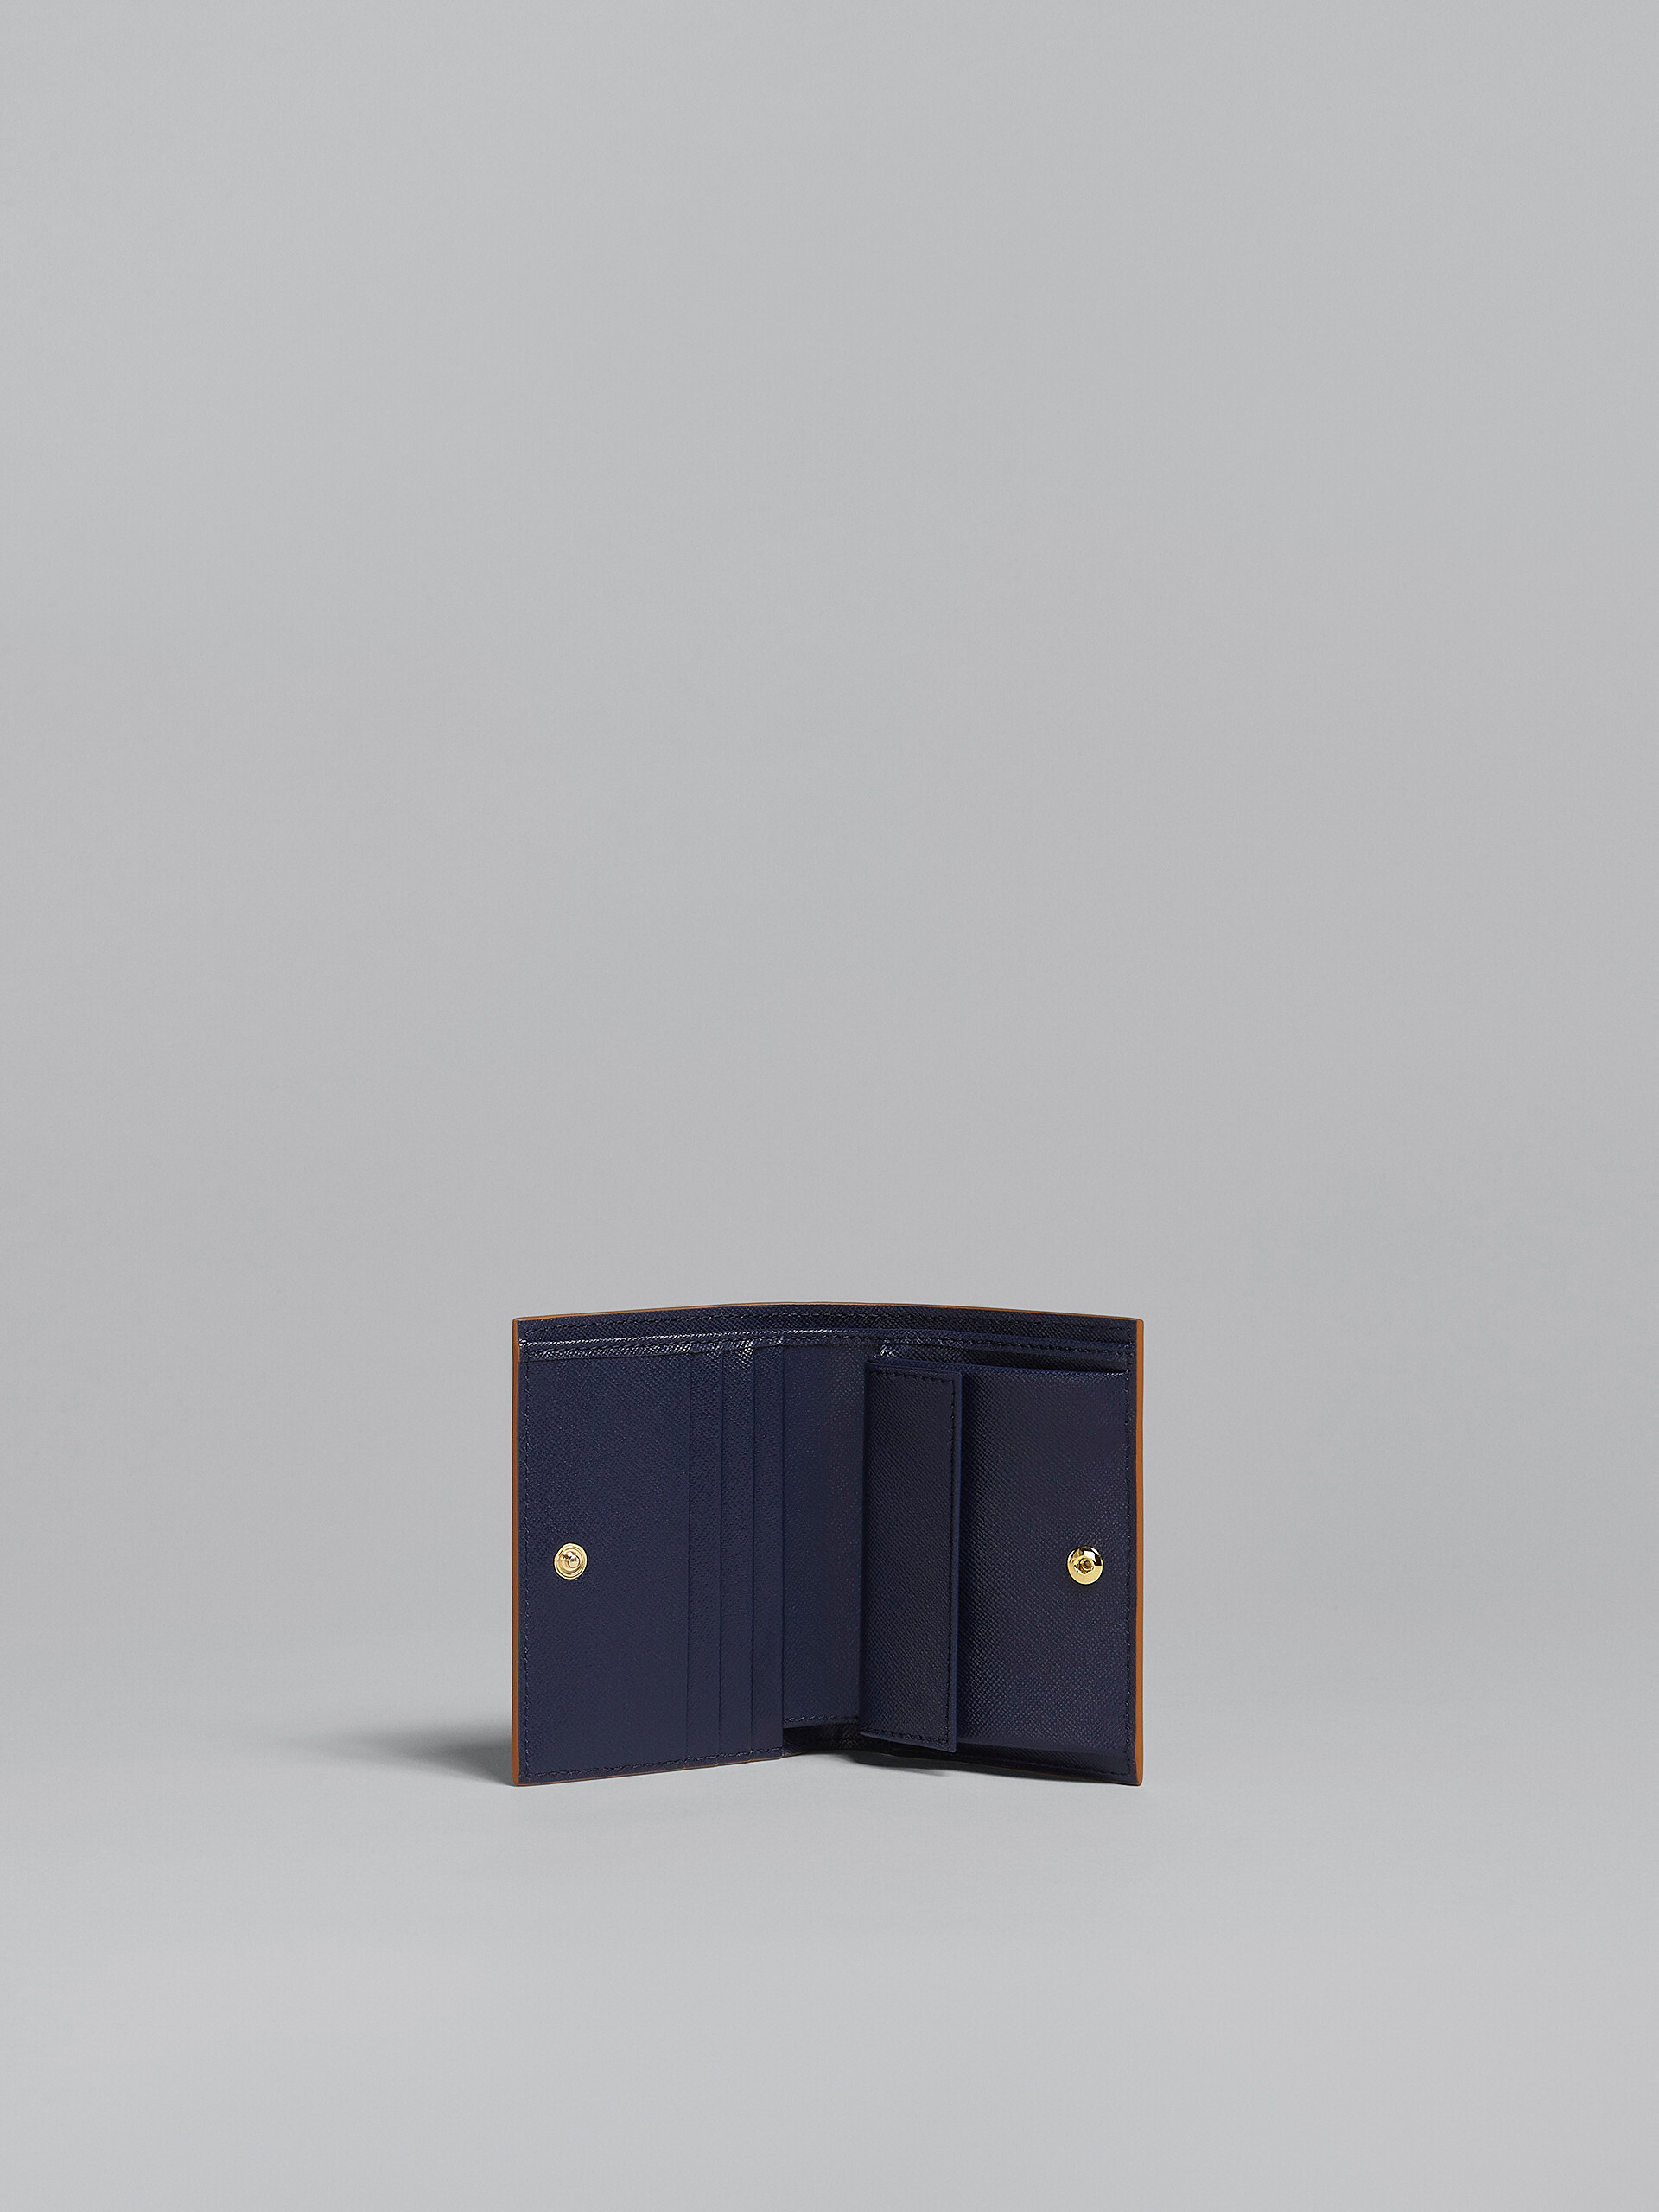 ブルー サフィアーノレザー二つ折りウォレット - 財布 - Image 2